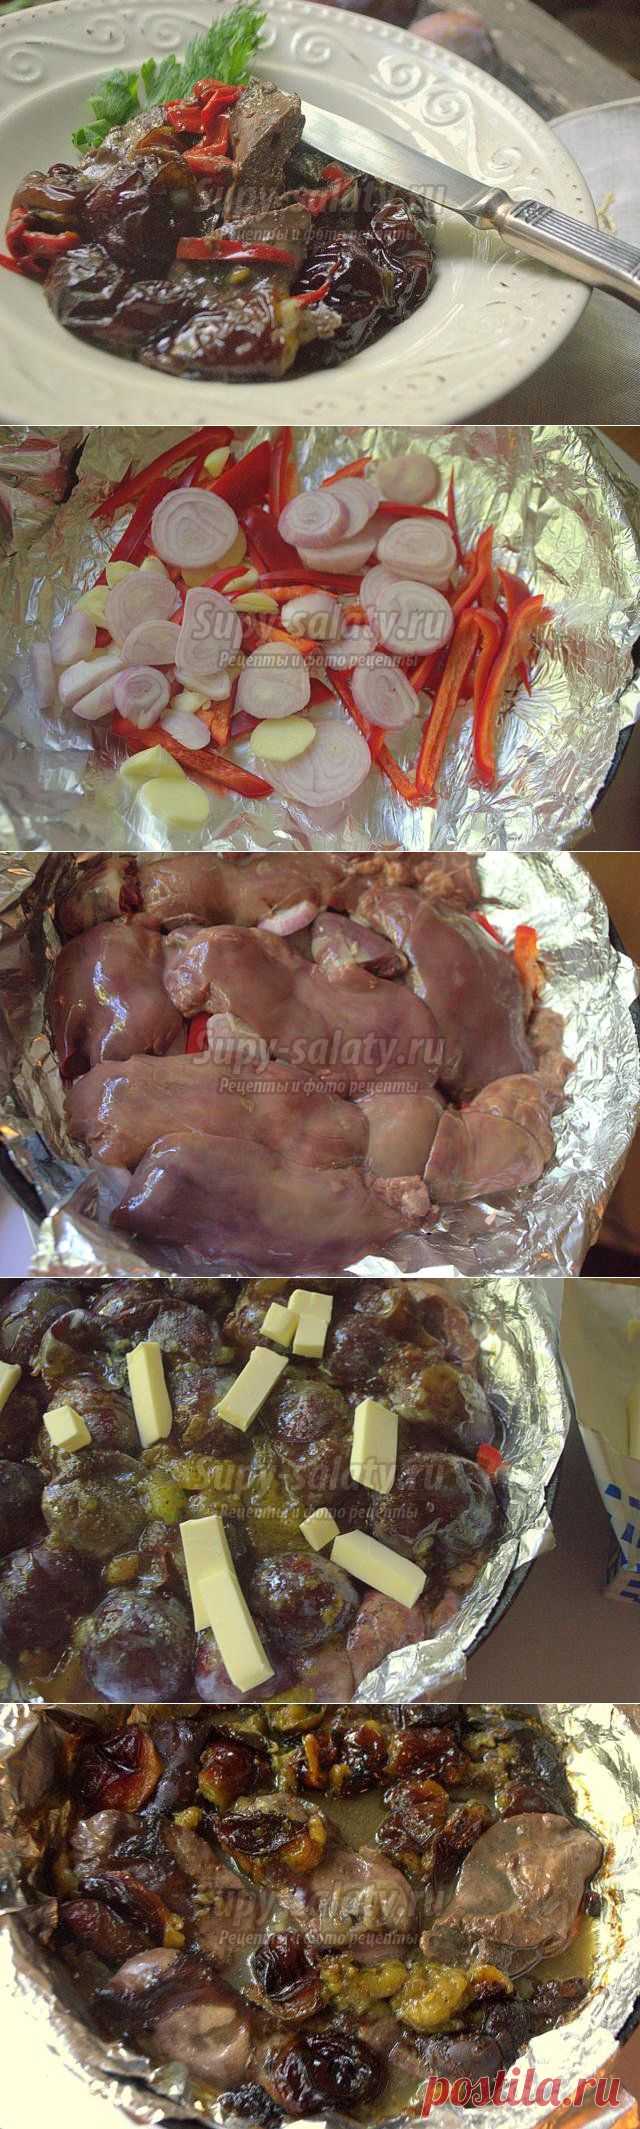 Запеченная куриная печень со сливами. Рецепт с пошаговыми фото